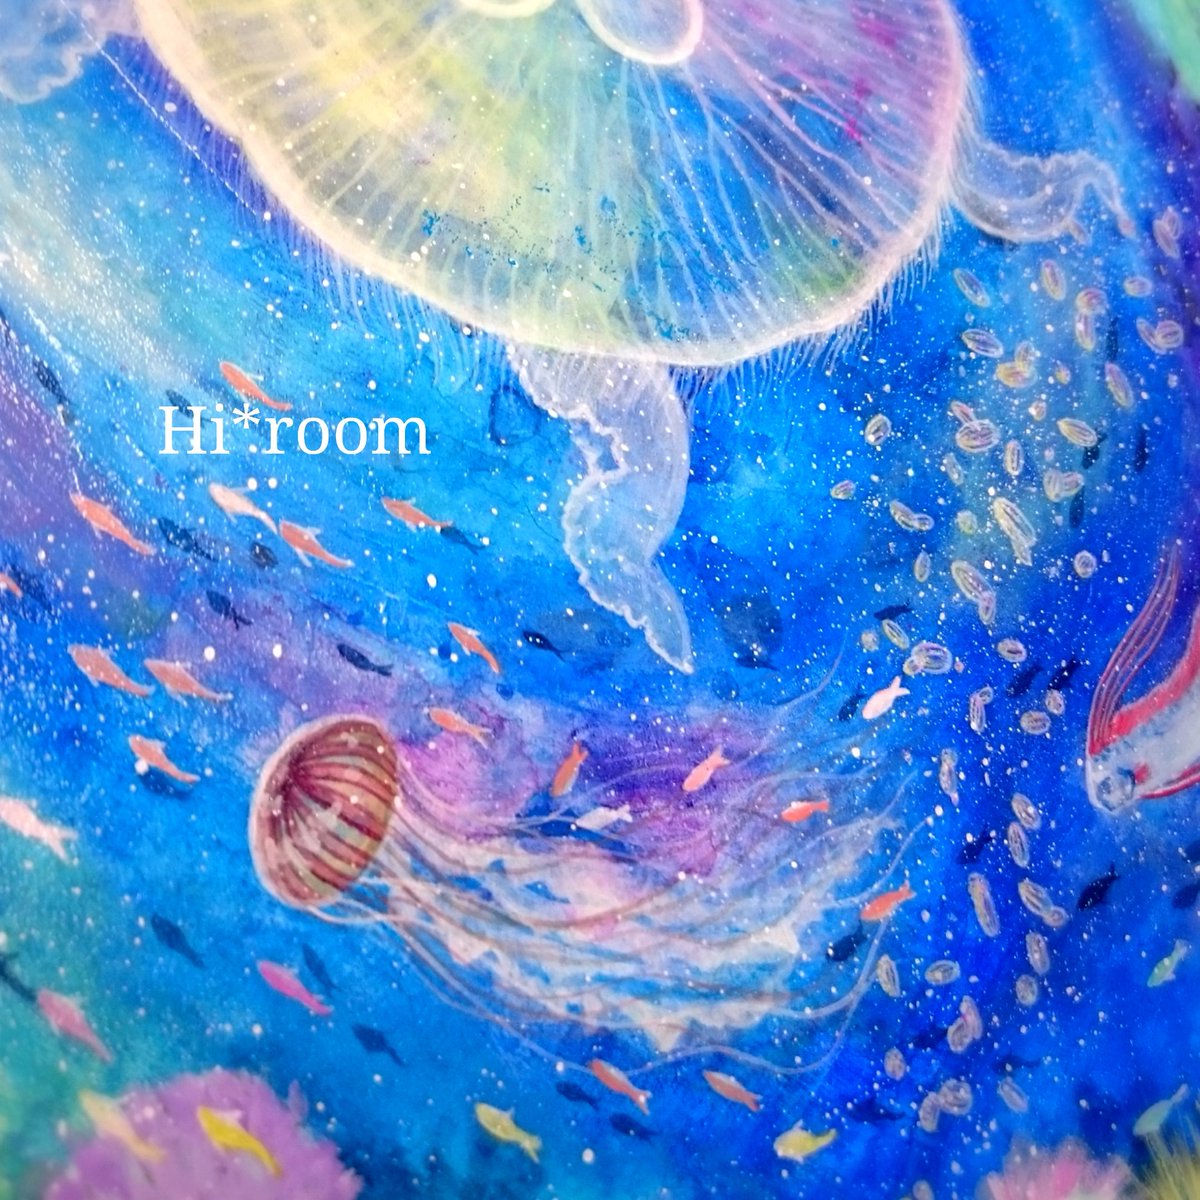 Hi Room ヨリドリ בטוויטר 新作の絵が完成した パラダイス感満載のカラフルな仕上がりになってます 絵の一部 クラゲだらけの部分 ウリクラゲ アカクラゲ ミズクラゲ 青 Blue アクリル画 クラゲ Jellyfish イラスト Illustration T Co